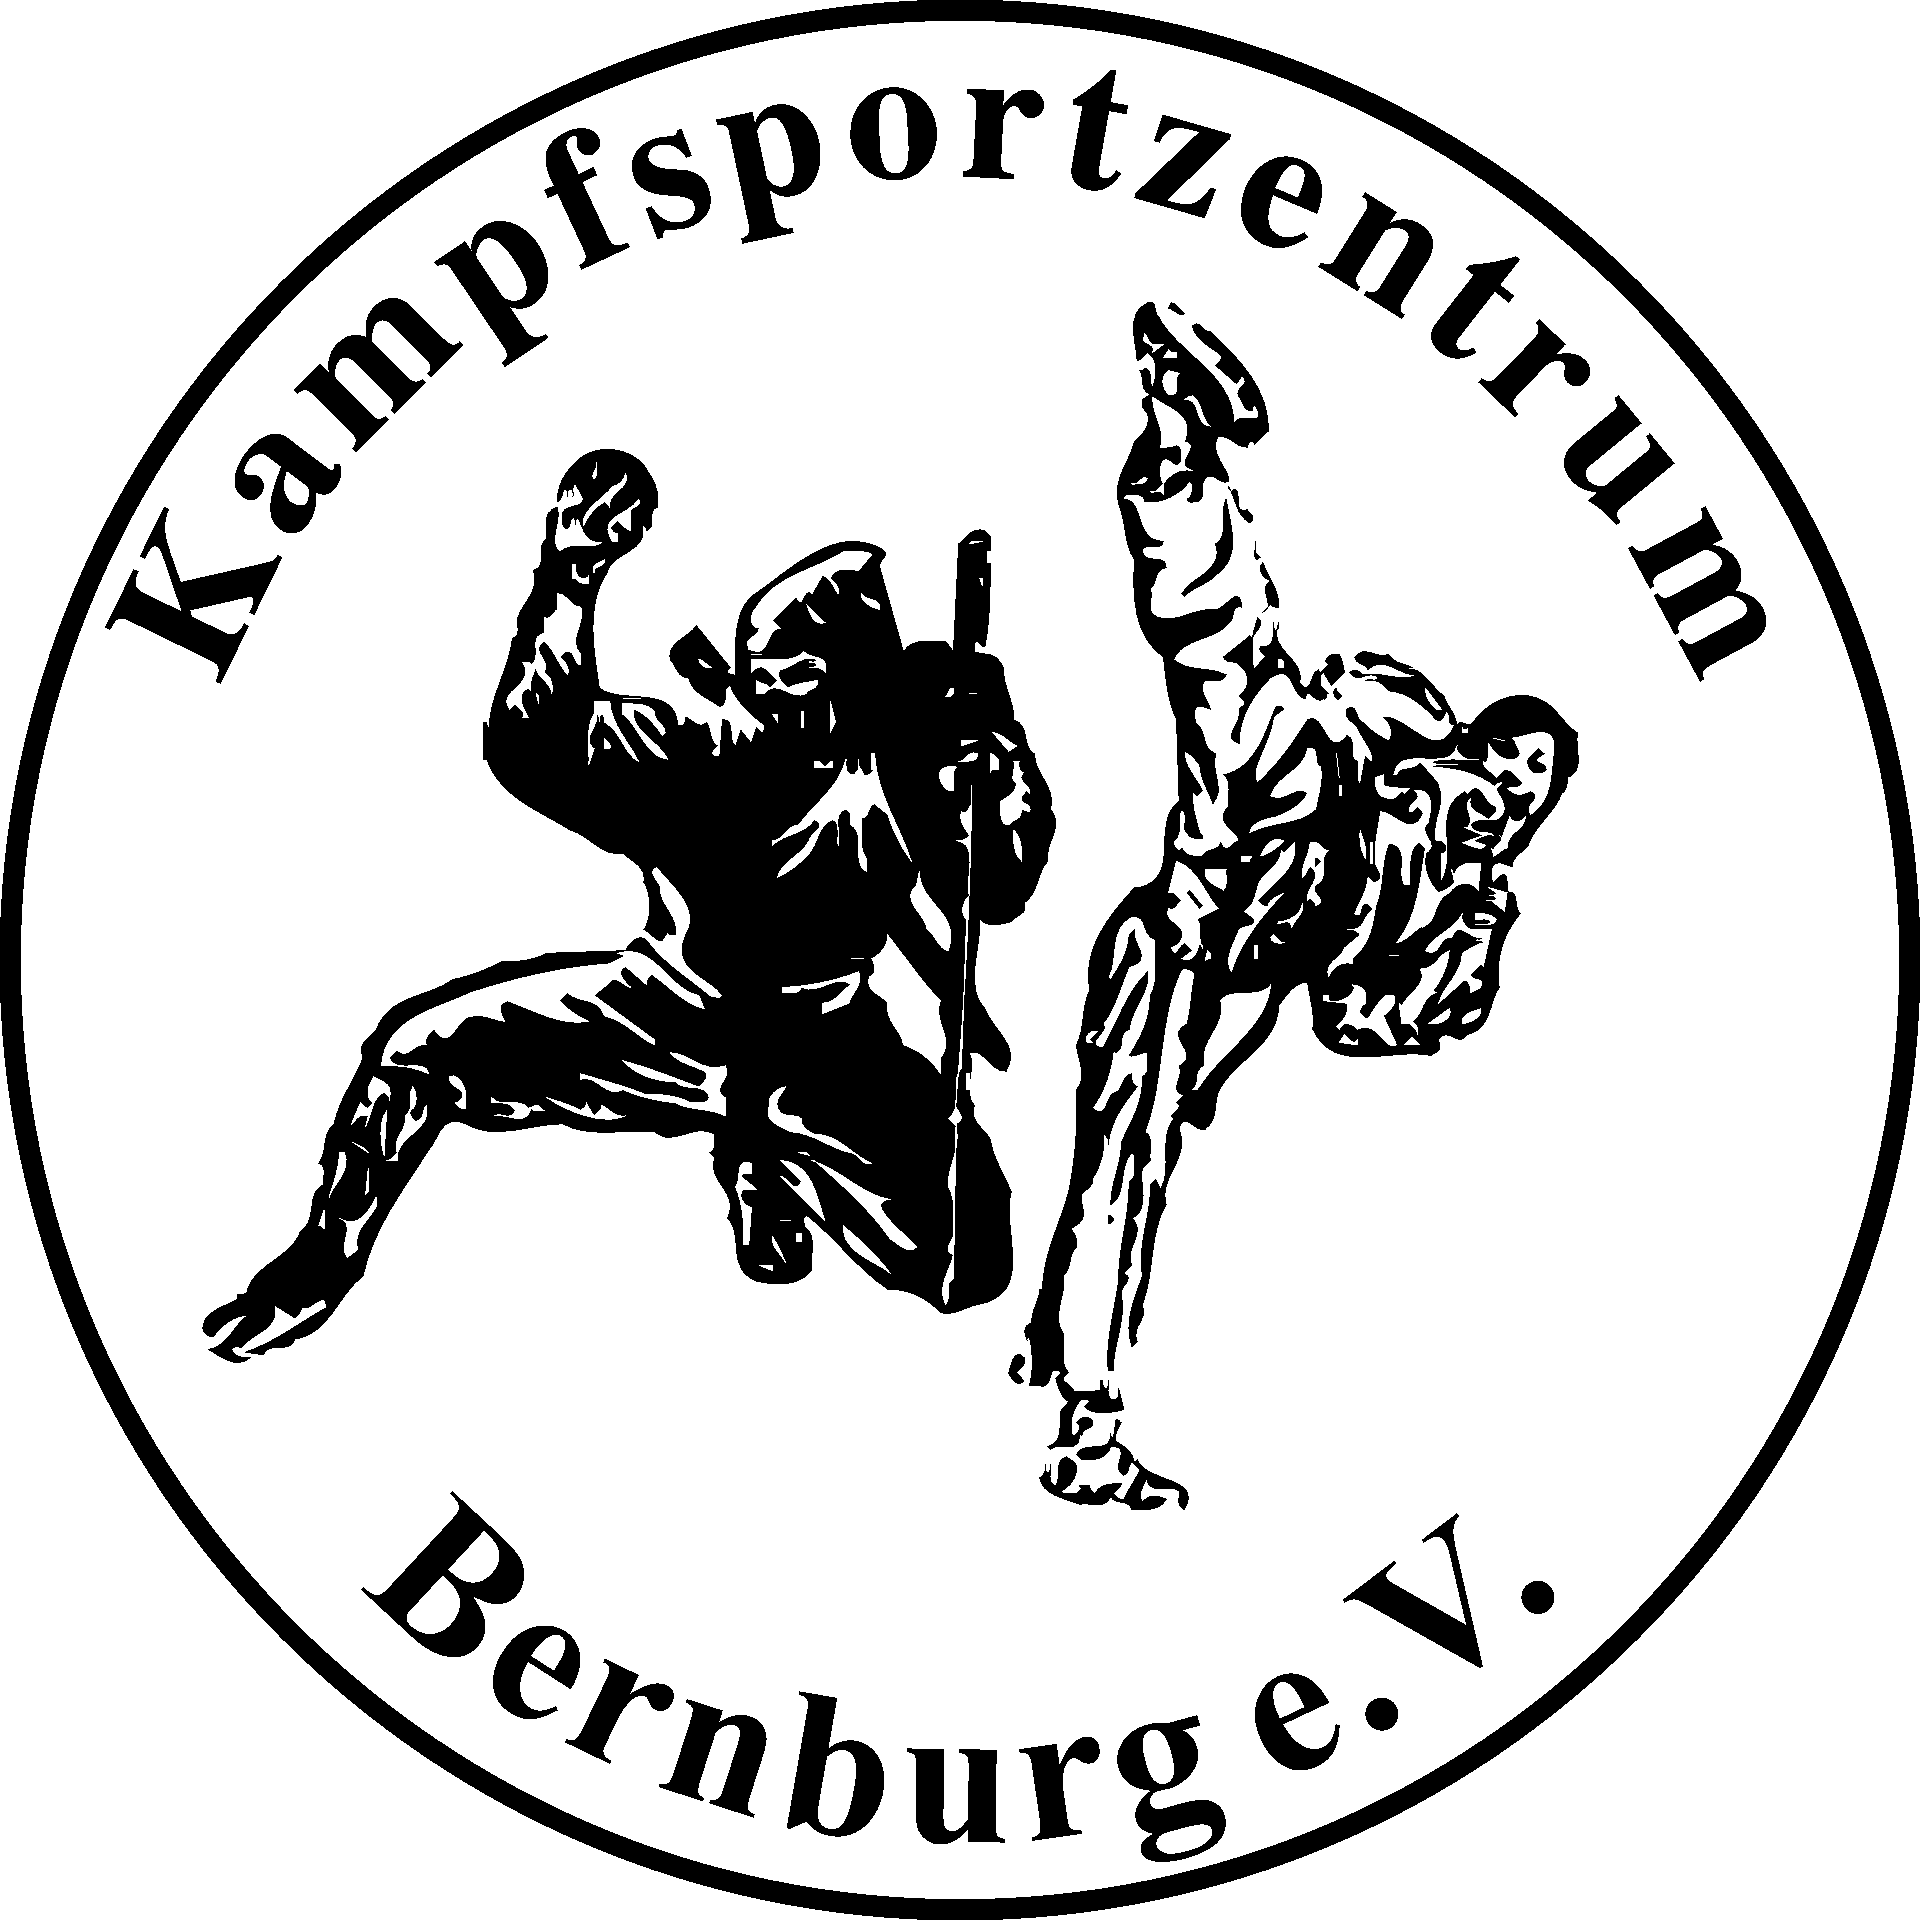 Kampfsportzentrum Bernburg e.V.